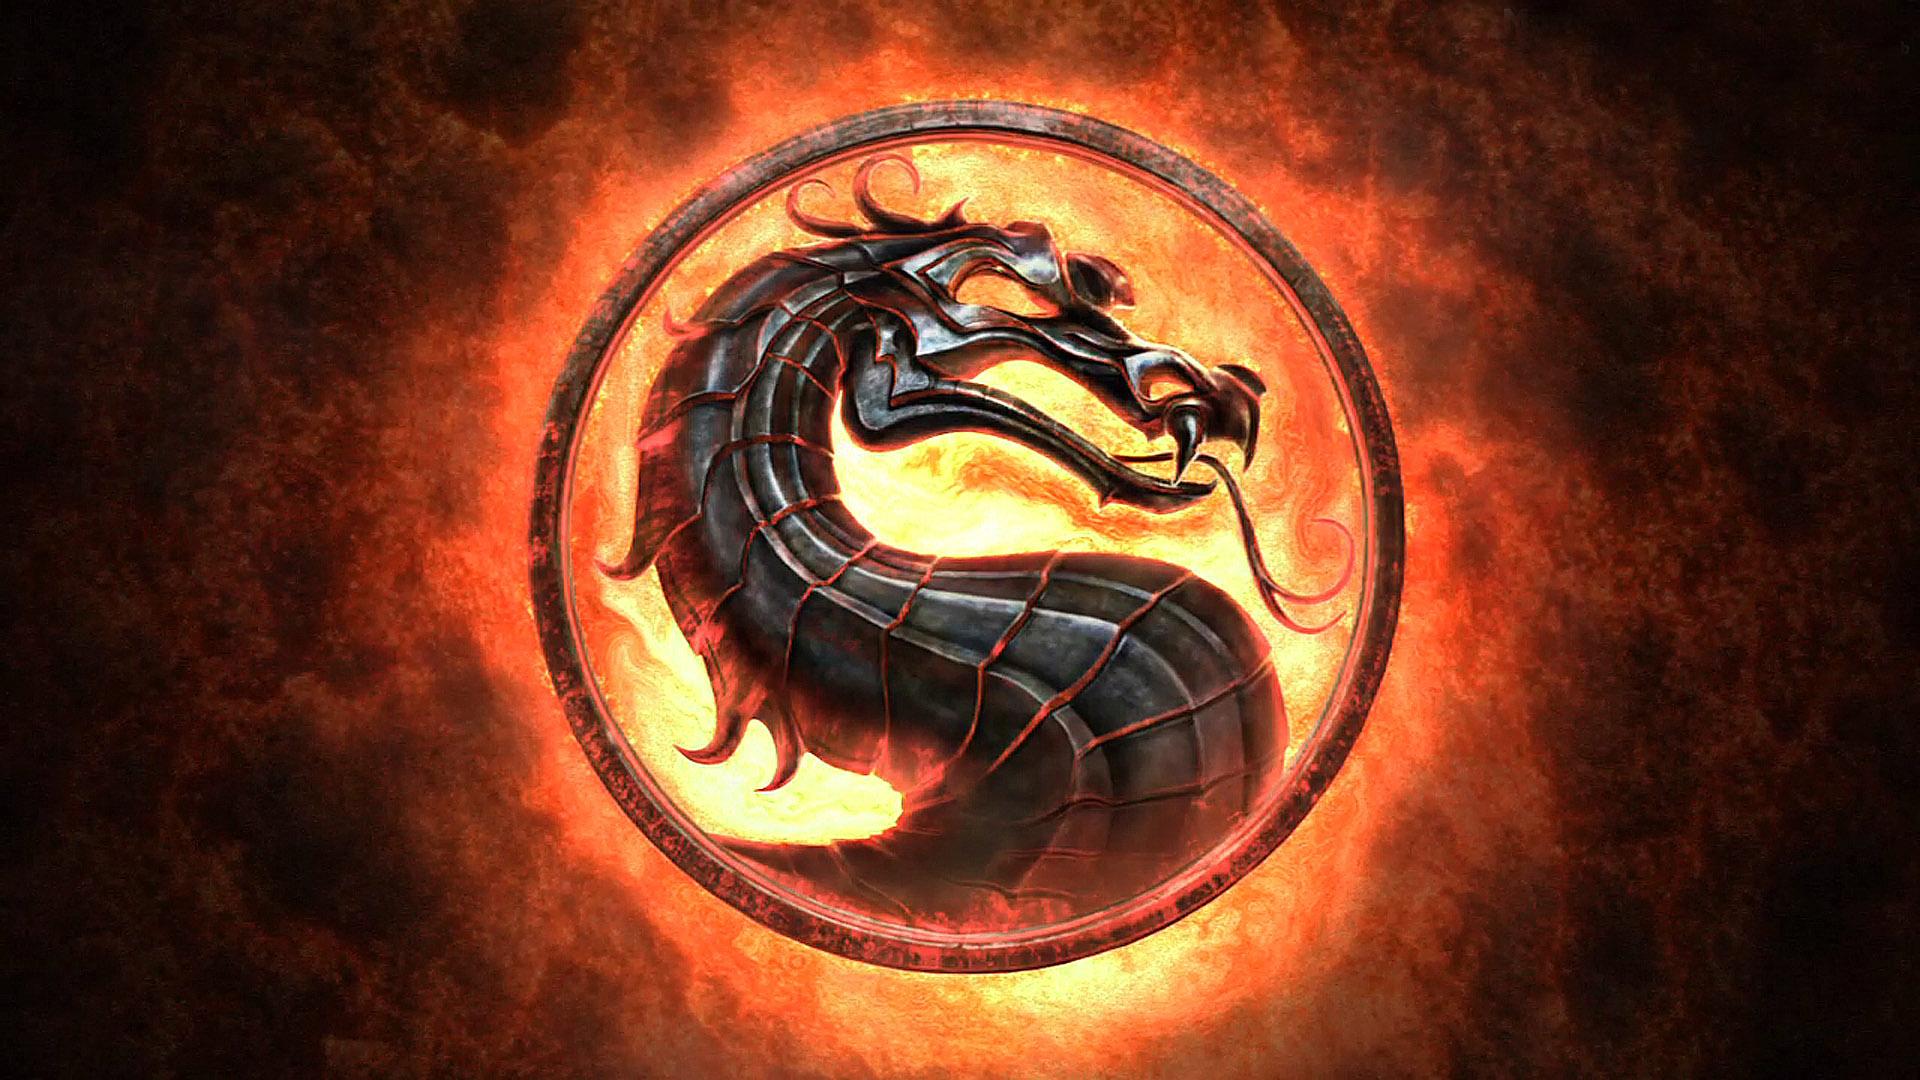 45 Mortal Kombat X Wallpaper 1080p  WallpaperSafari